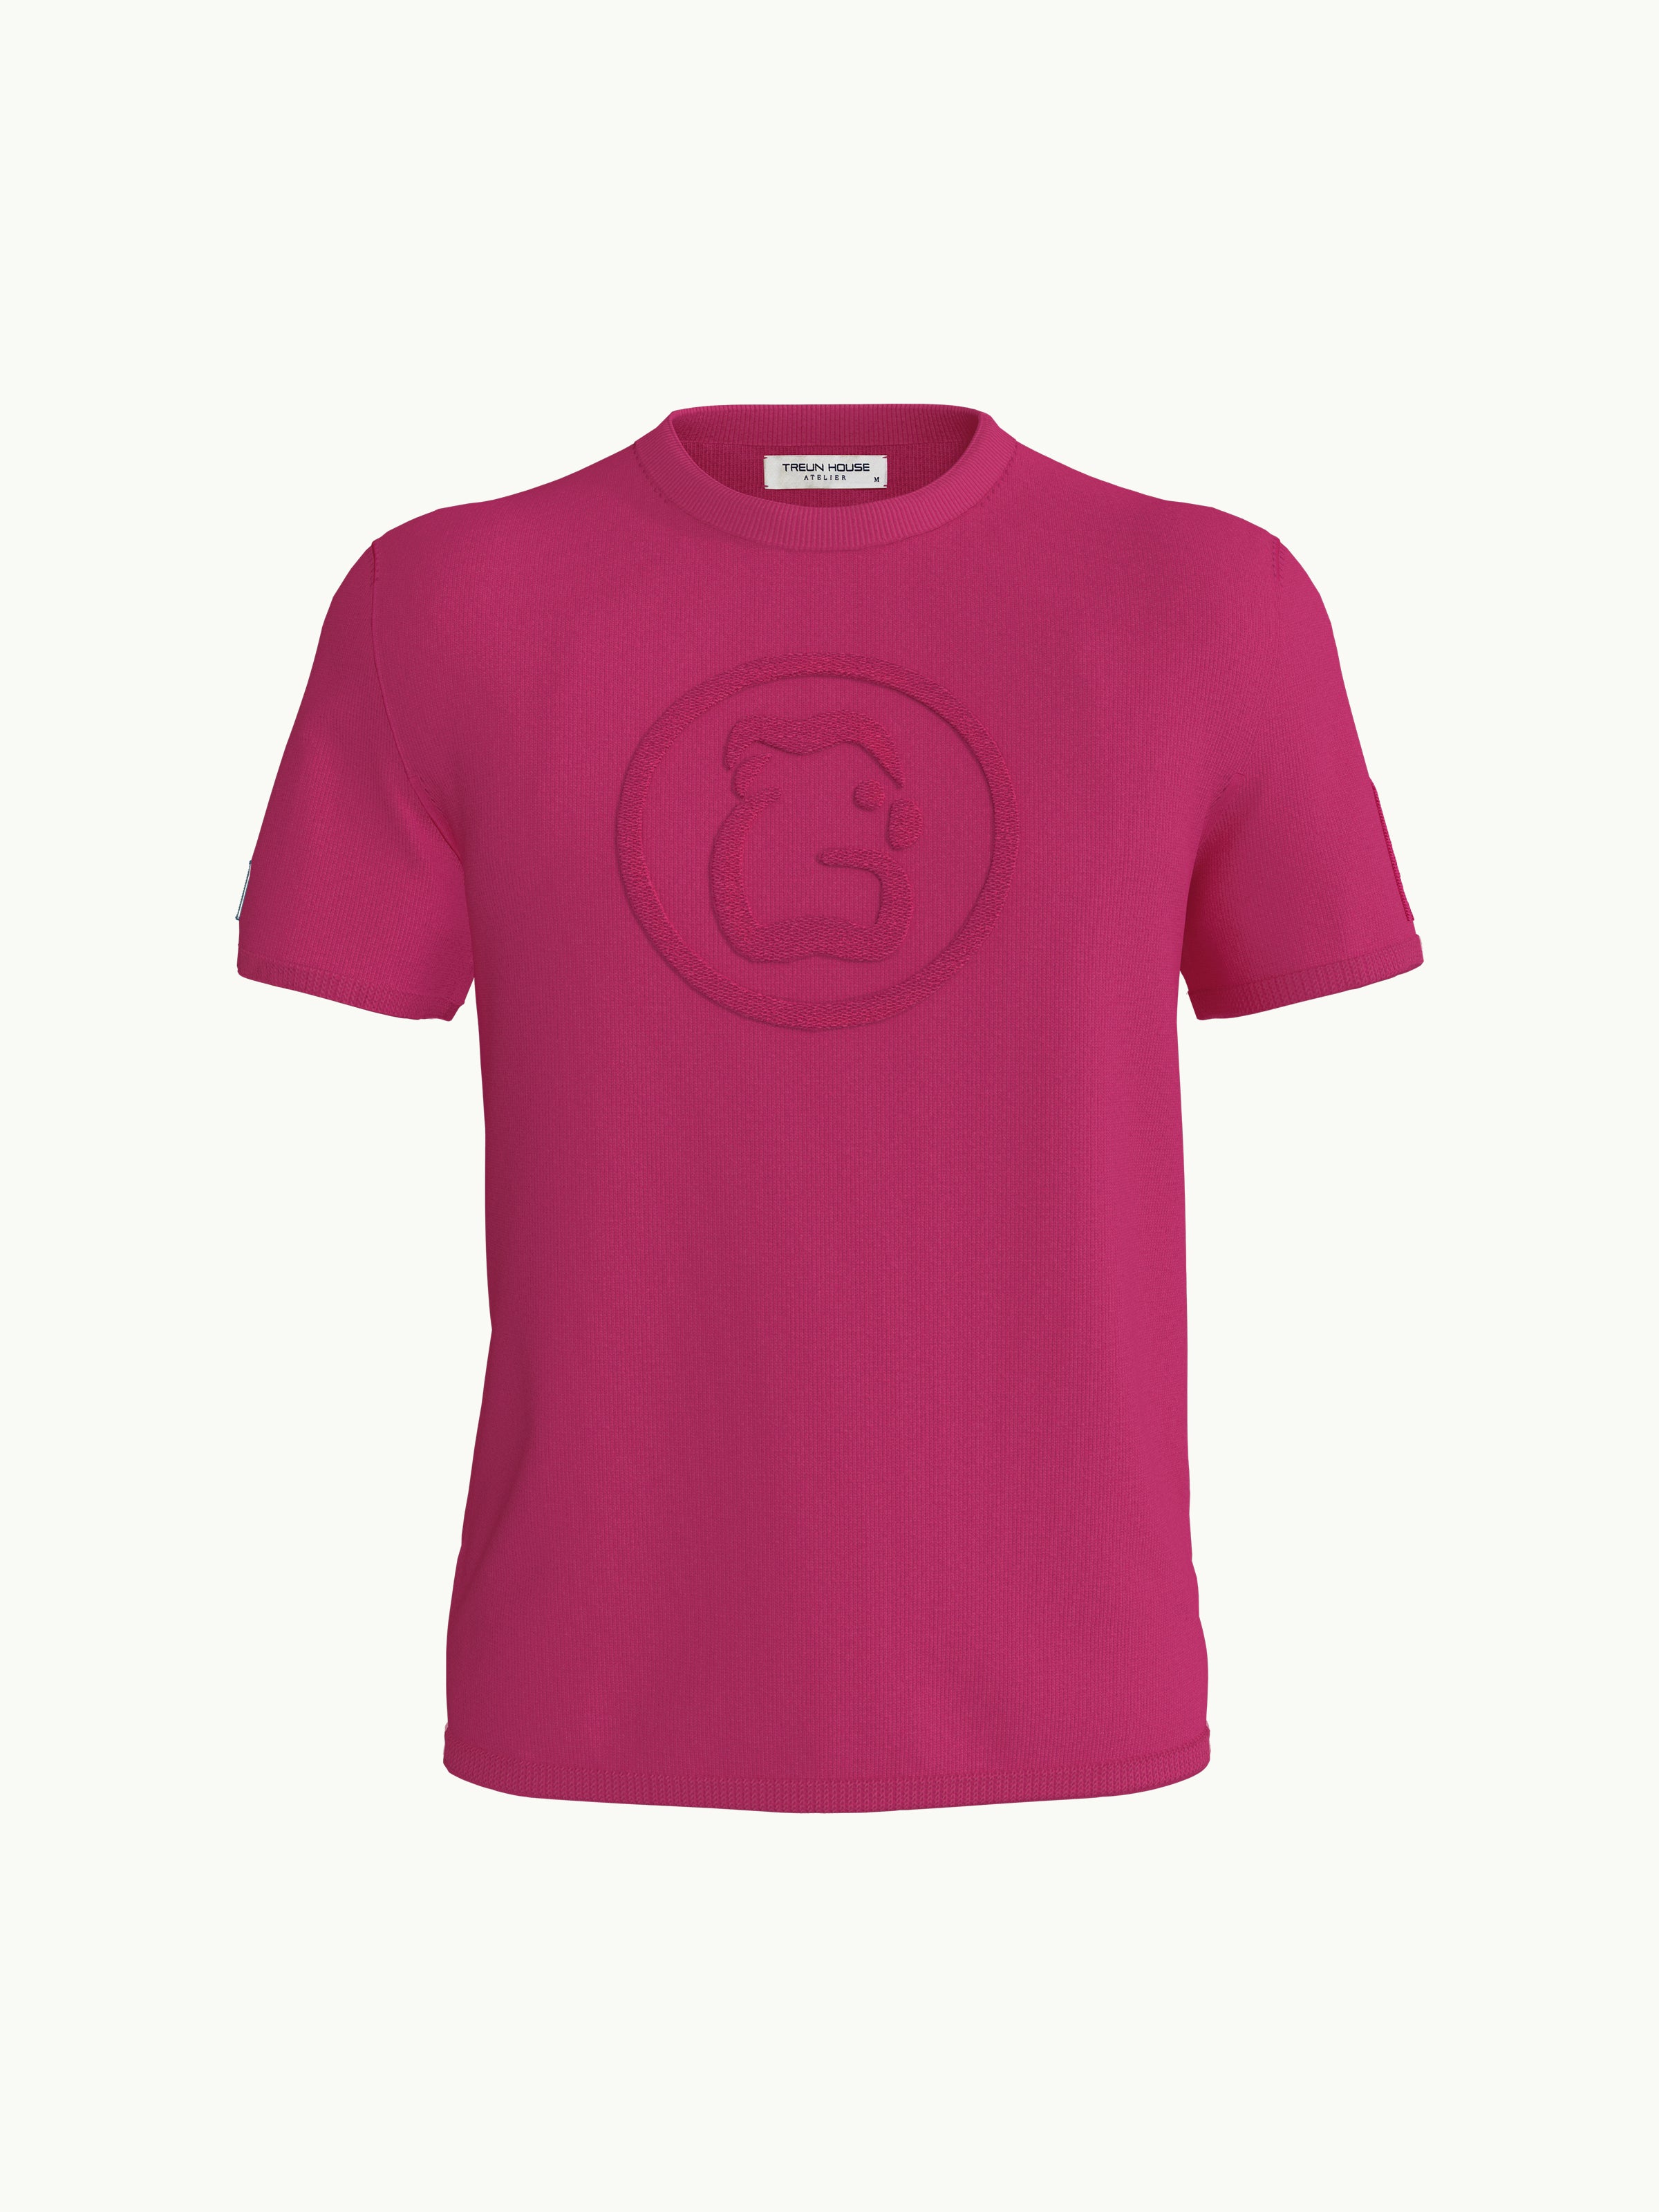 Men's T-Shirt - Butterfly Pink